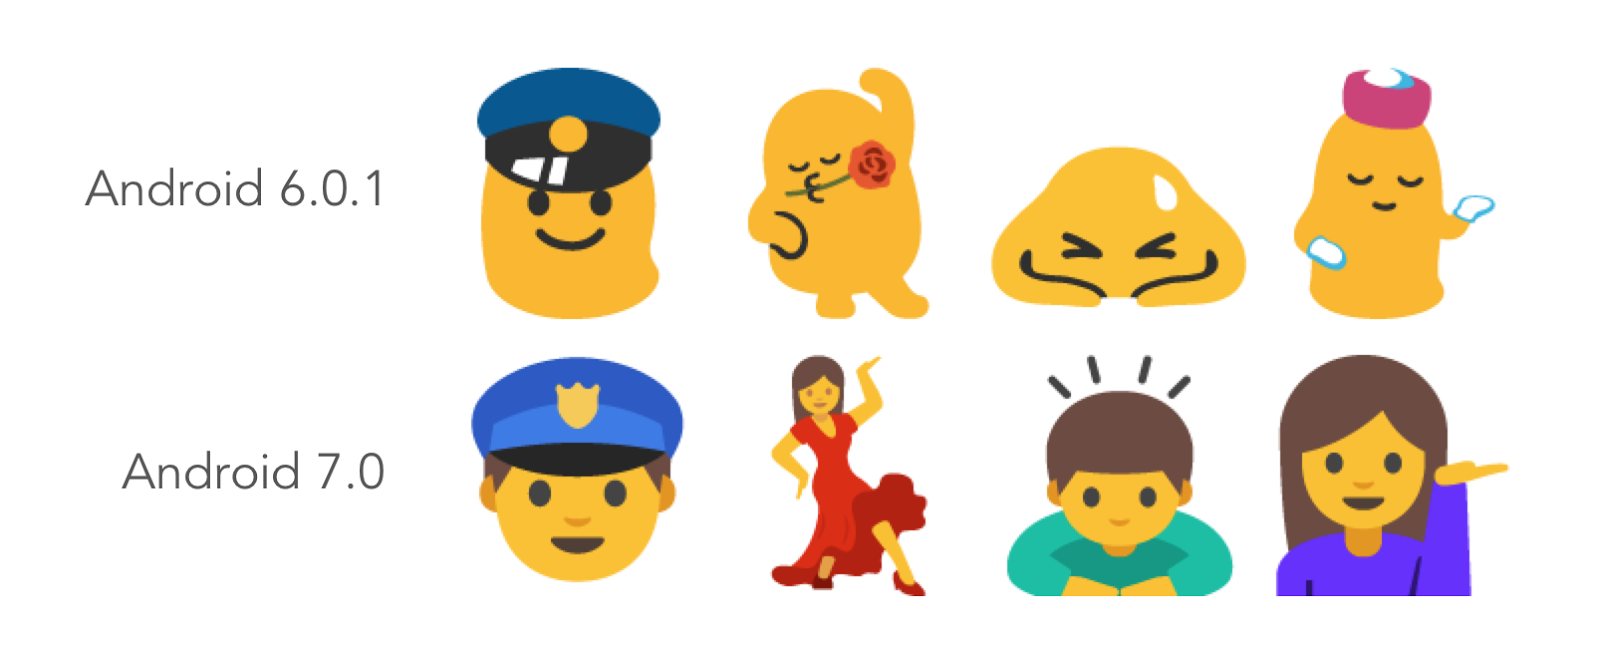 Perubahan Emoji Pada Android Nougat Kentungweb